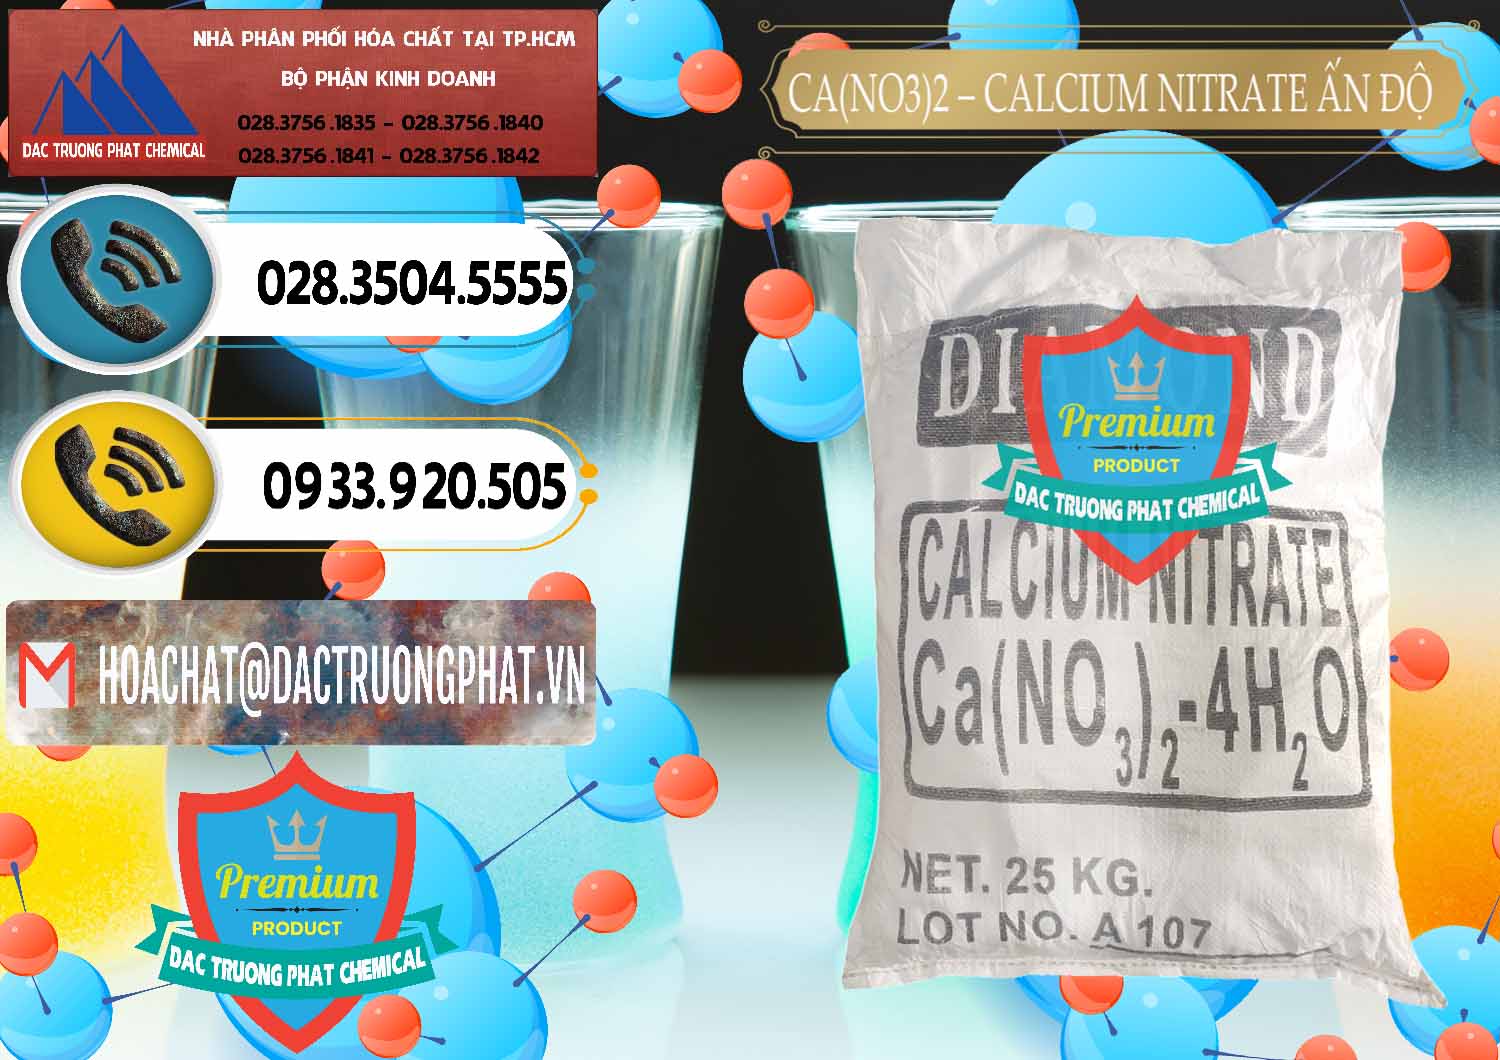 Nơi nhập khẩu _ bán CA(NO3)2 – Calcium Nitrate Ấn Độ India - 0038 - Cty chuyên bán & phân phối hóa chất tại TP.HCM - hoachatdetnhuom.vn